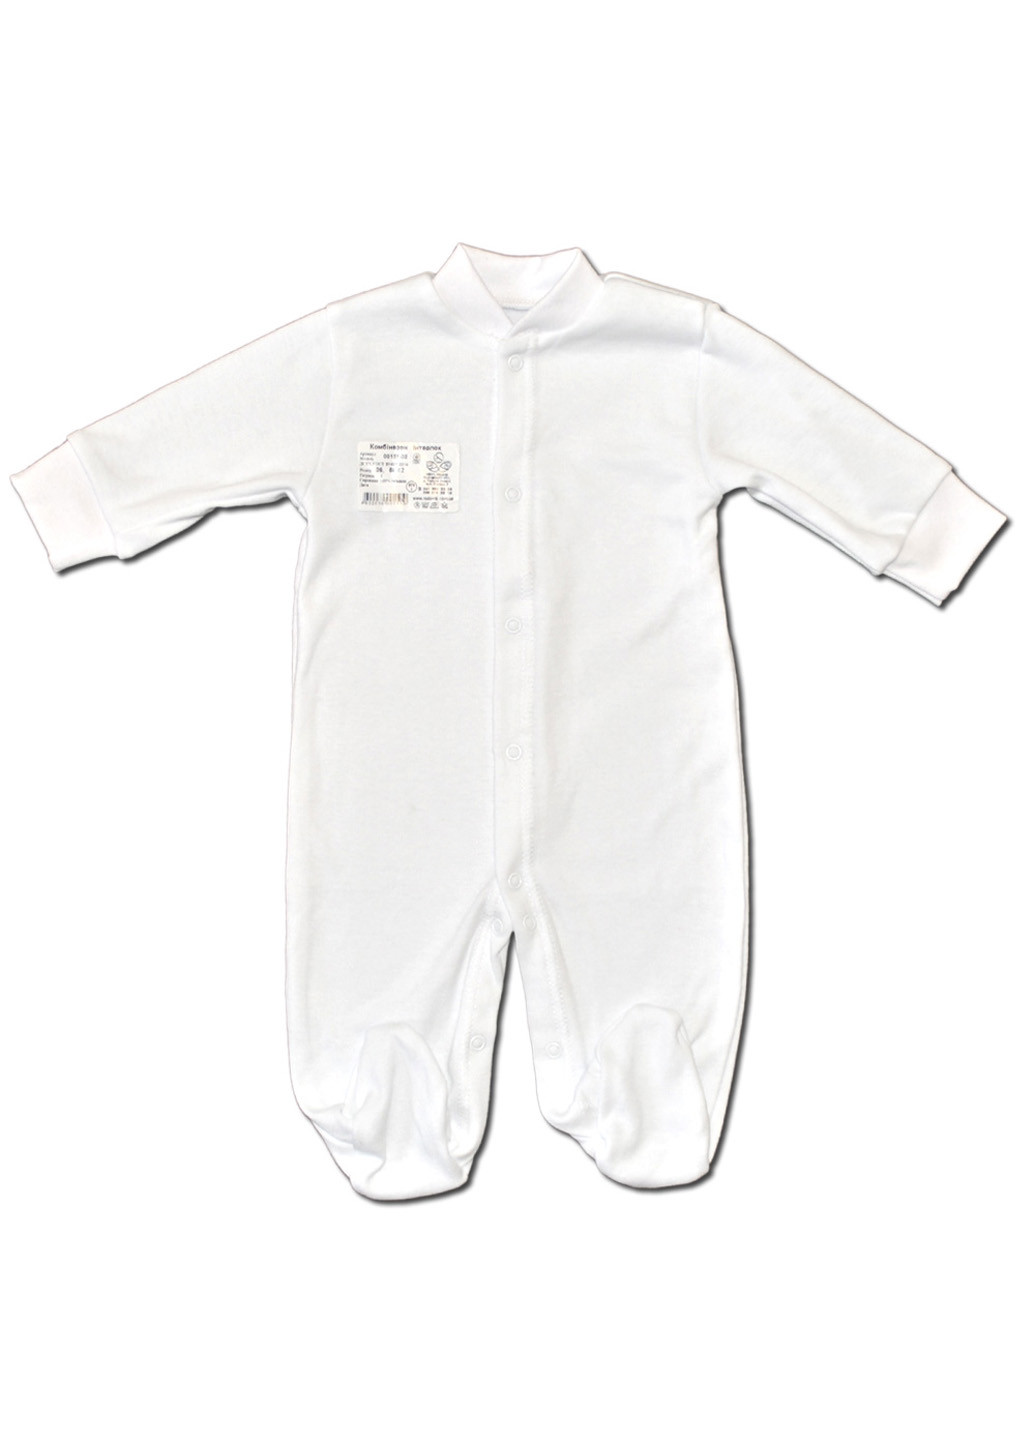 Белый демисезонный комплект для новорожденных №7 (5 предметов) тм коллекция капитошка белый Родовик комплект - 07Б